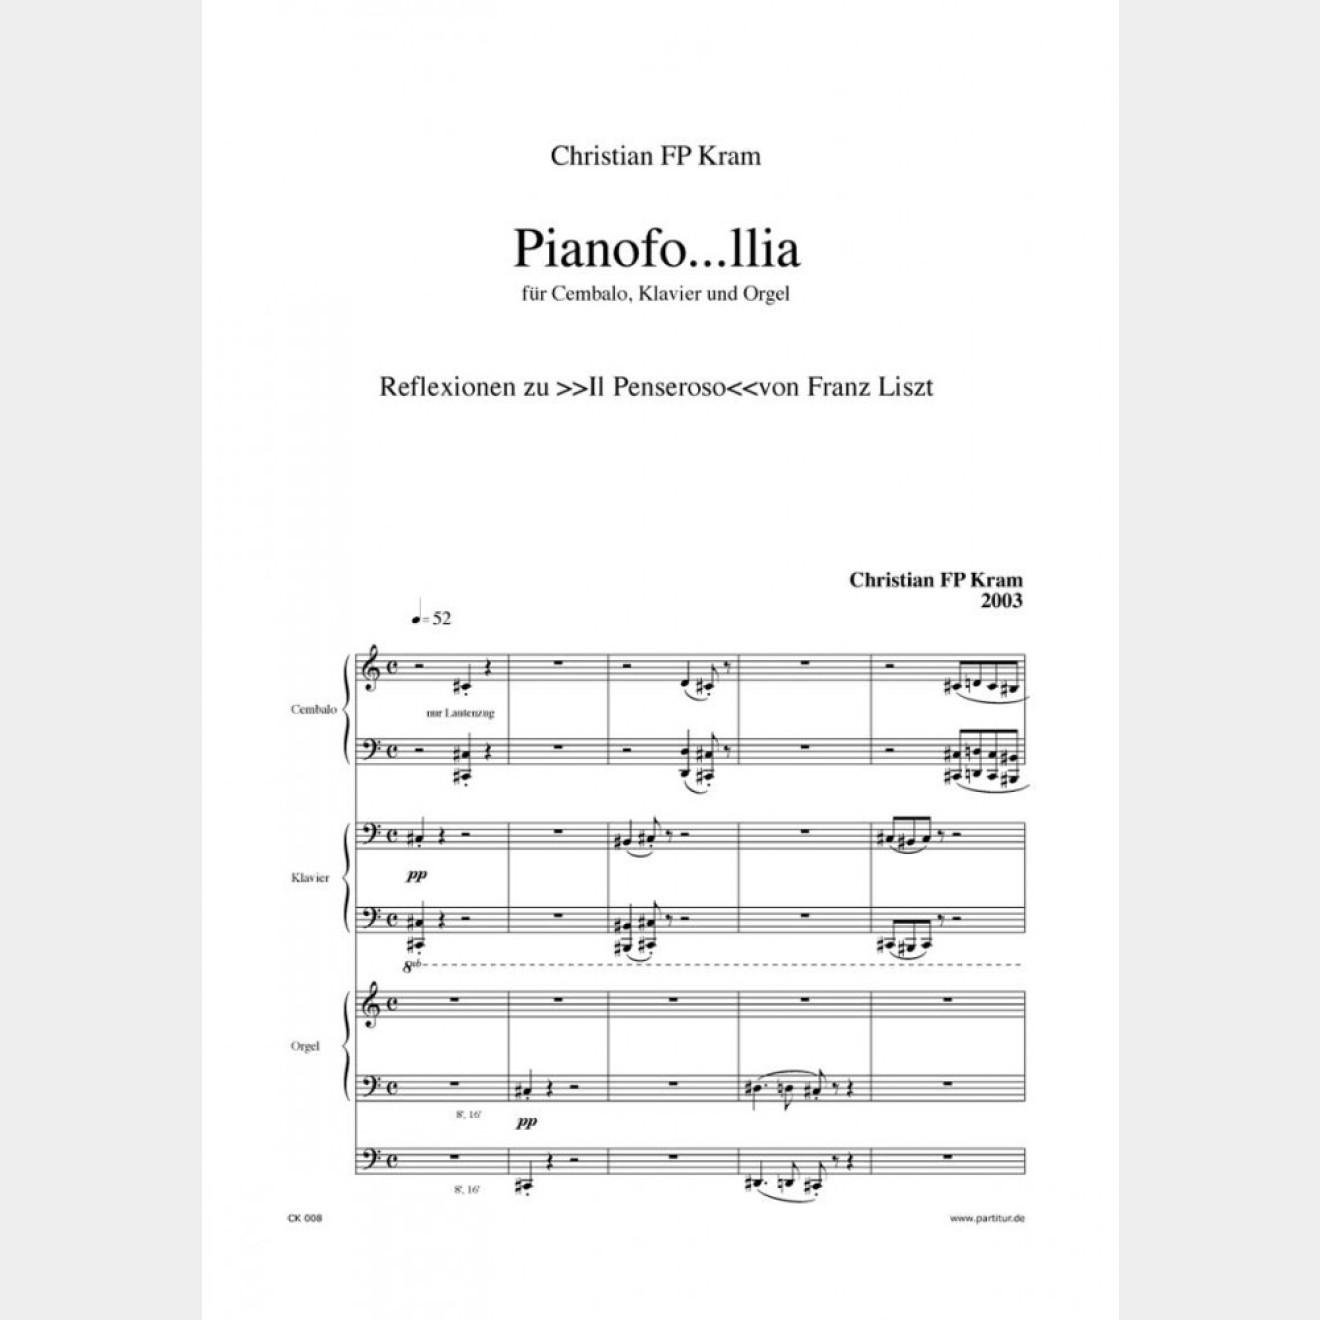 Pianofo...llia (3 parts)